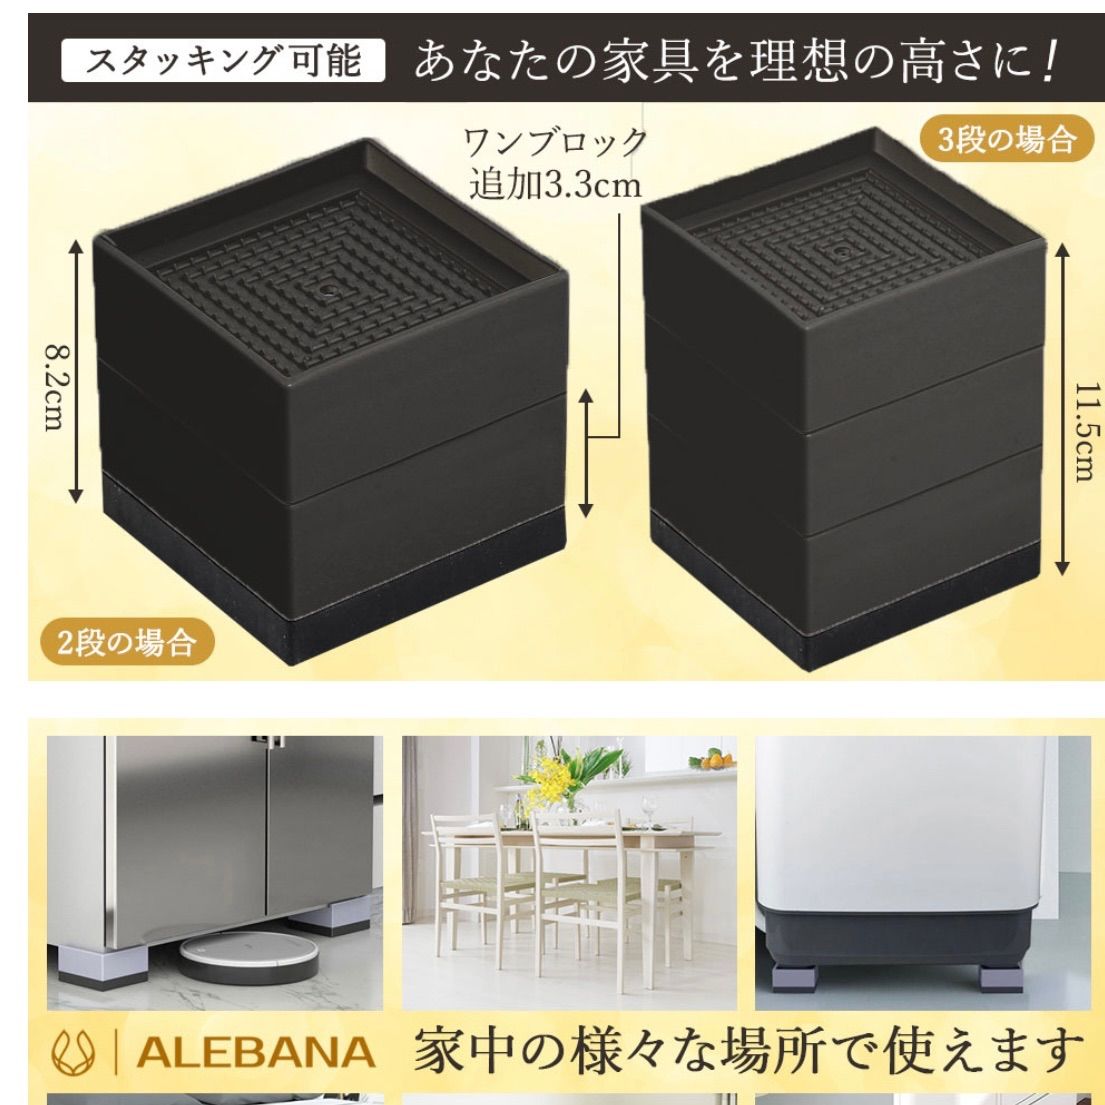 【色: ブラック】ALEBANA 高さ調整 机 こたつ 角足 継ぎ足し テーブル